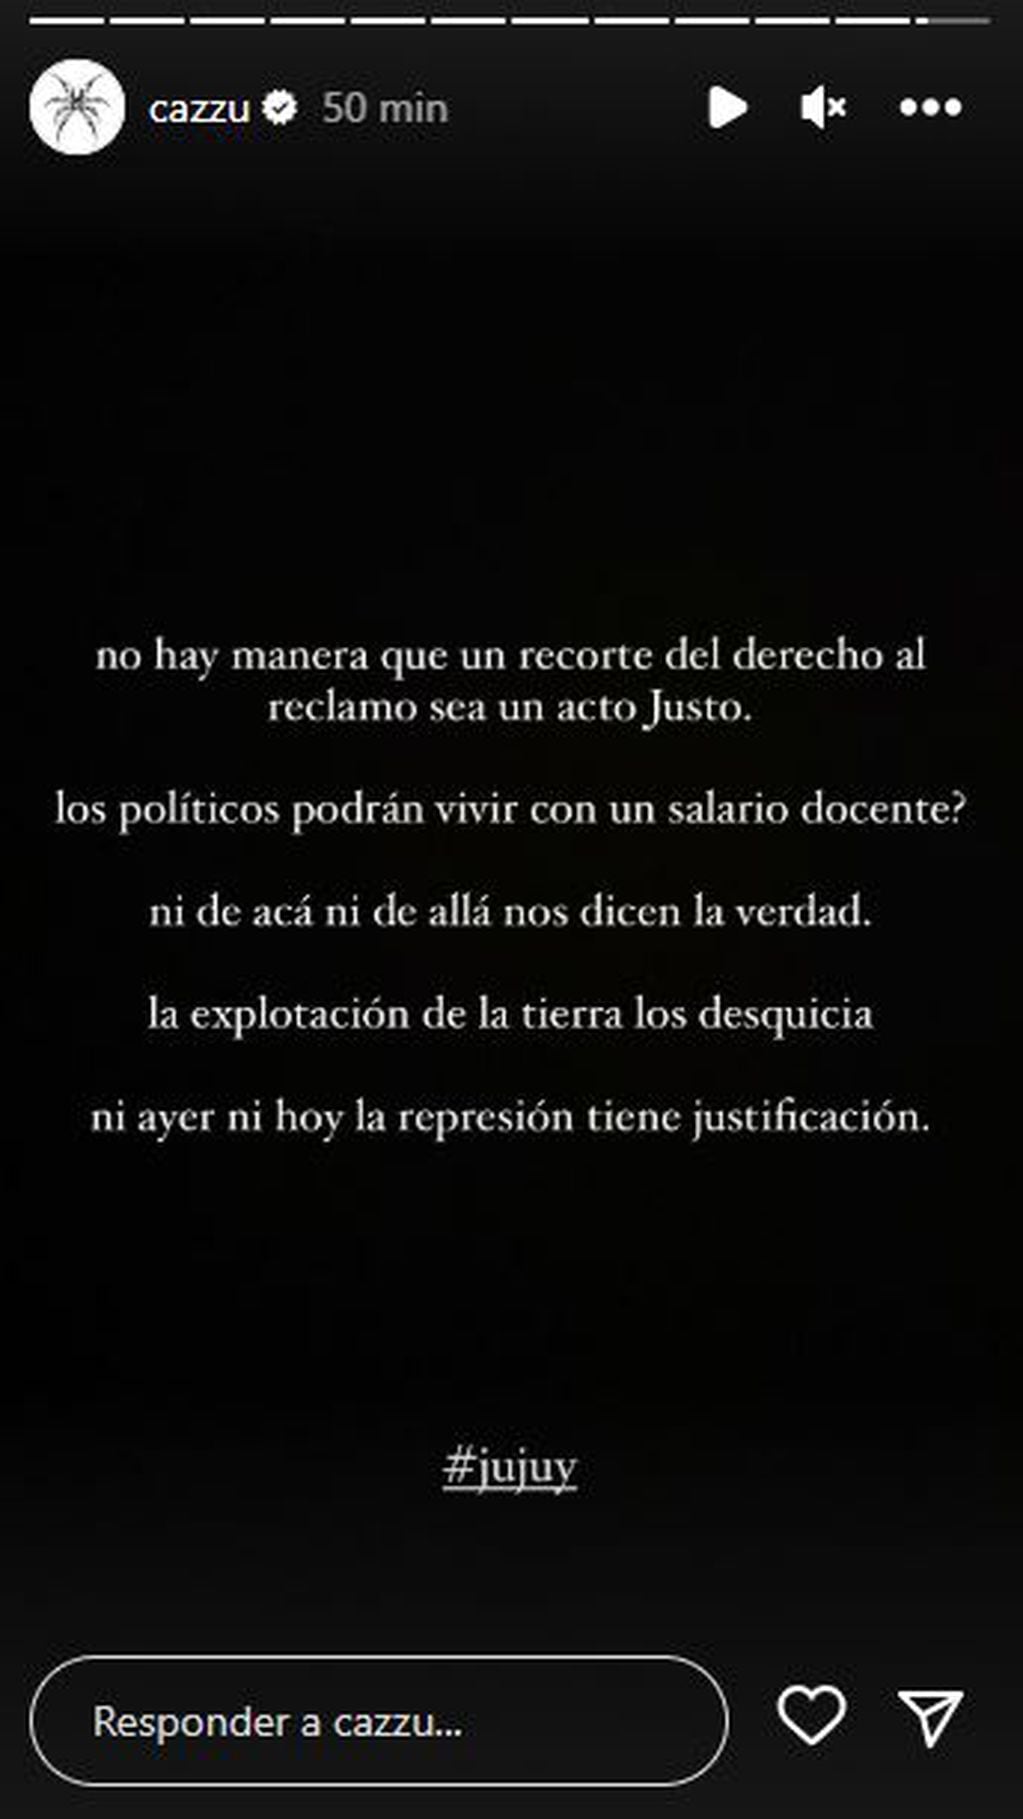 Cazzu opinó sobre la represión en Jujuy: “¿Los políticos podrán vivir con un salario docente?”